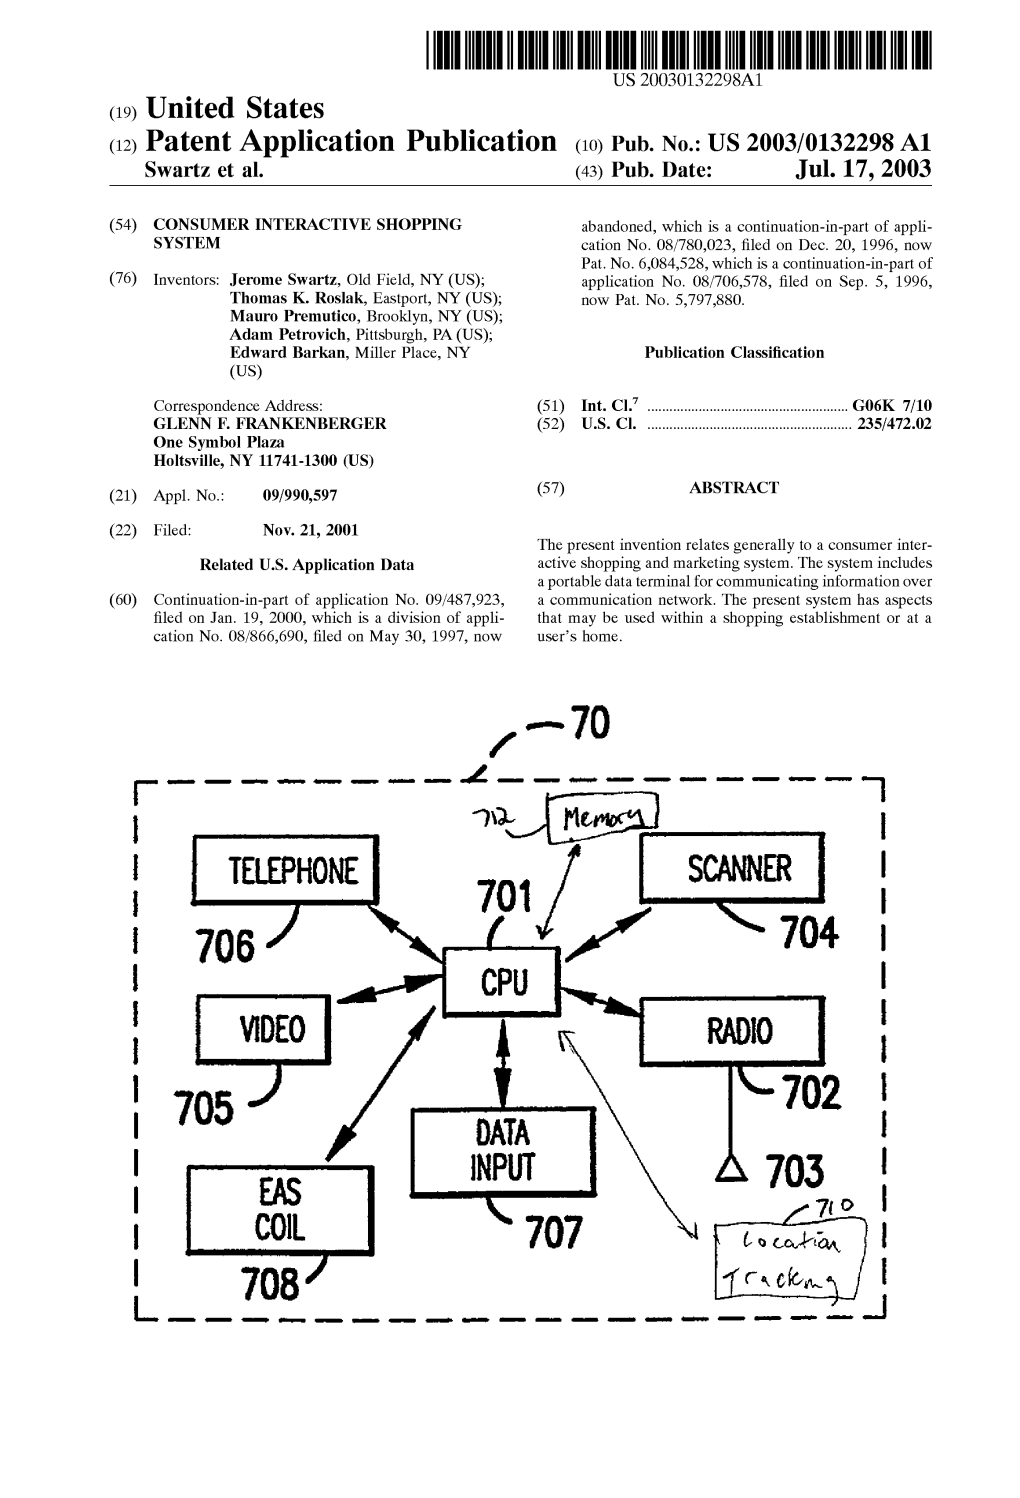 (12) Patent Application Publication (10) Pub. No.: US 2003/0132298 A1 Swartz Et Al